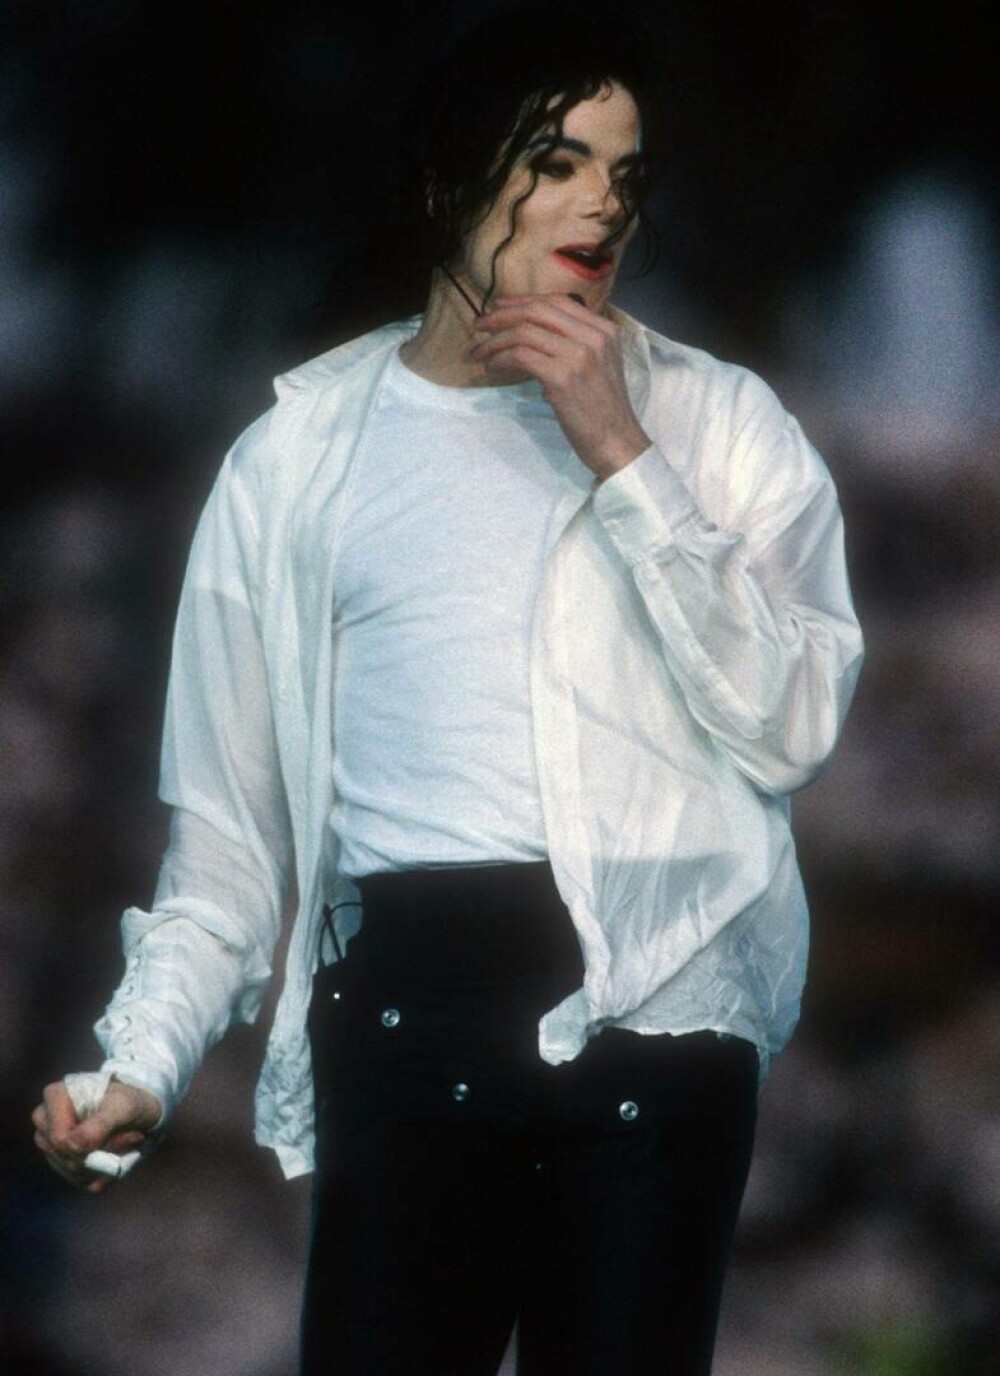 Imagini de colecție cu Michael Jackson. Regele muzicii pop ar fi împlinit 65 de ani | GALERIE FOTO - Imaginea 11